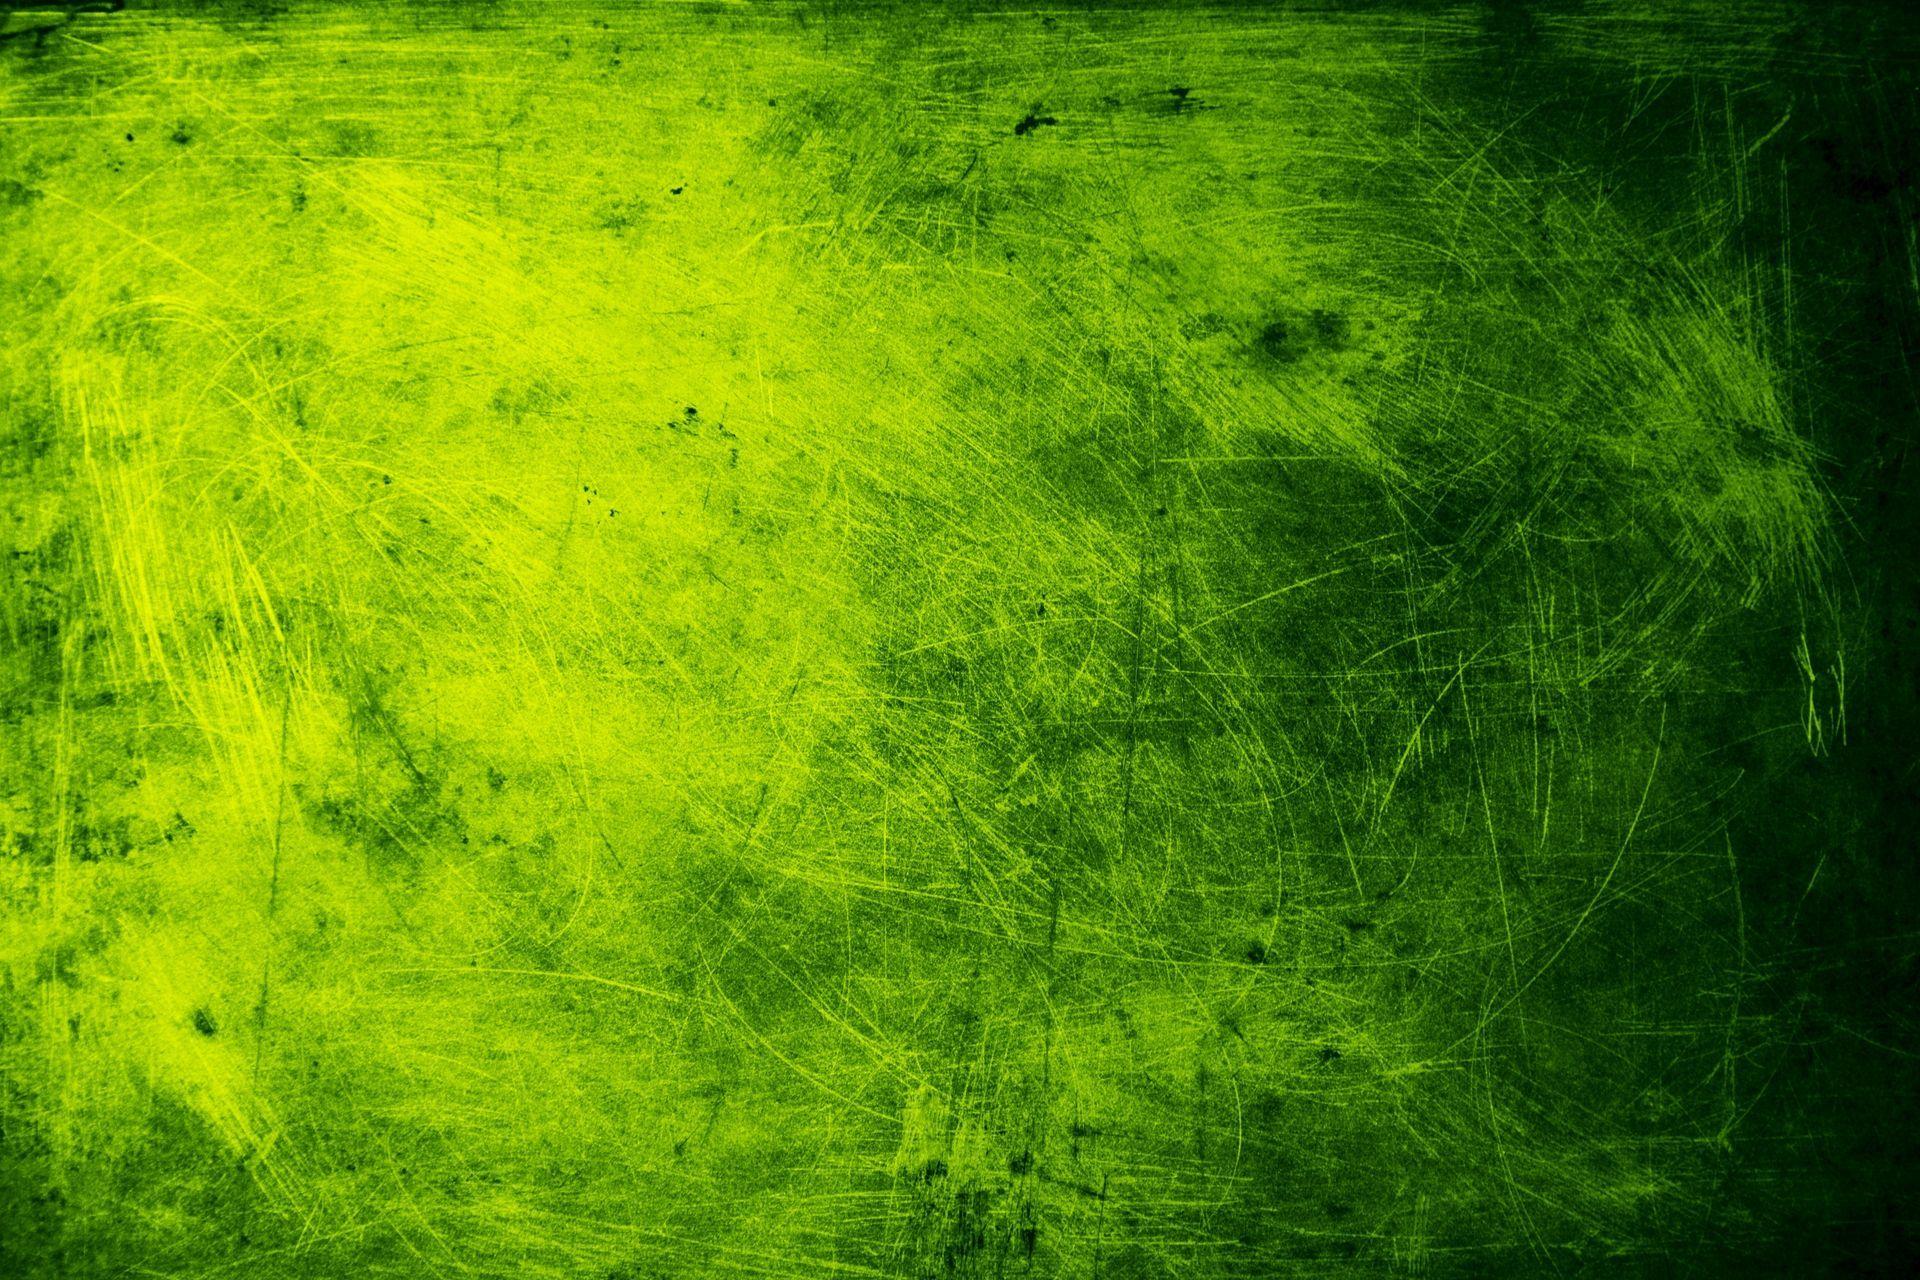 Hình nền xanh lá cây đẹp - Bạn đang tìm kiếm một hình nền xanh lá cây đẹp tuyệt vời để trang trí cho màn hình của mình? Khám phá bộ sưu tập hình nền xanh lá cây với các thiết kế grunge độc đáo để mang lại cảm giác mới mẻ và thư giãn cho mắt khi sử dụng máy tính.